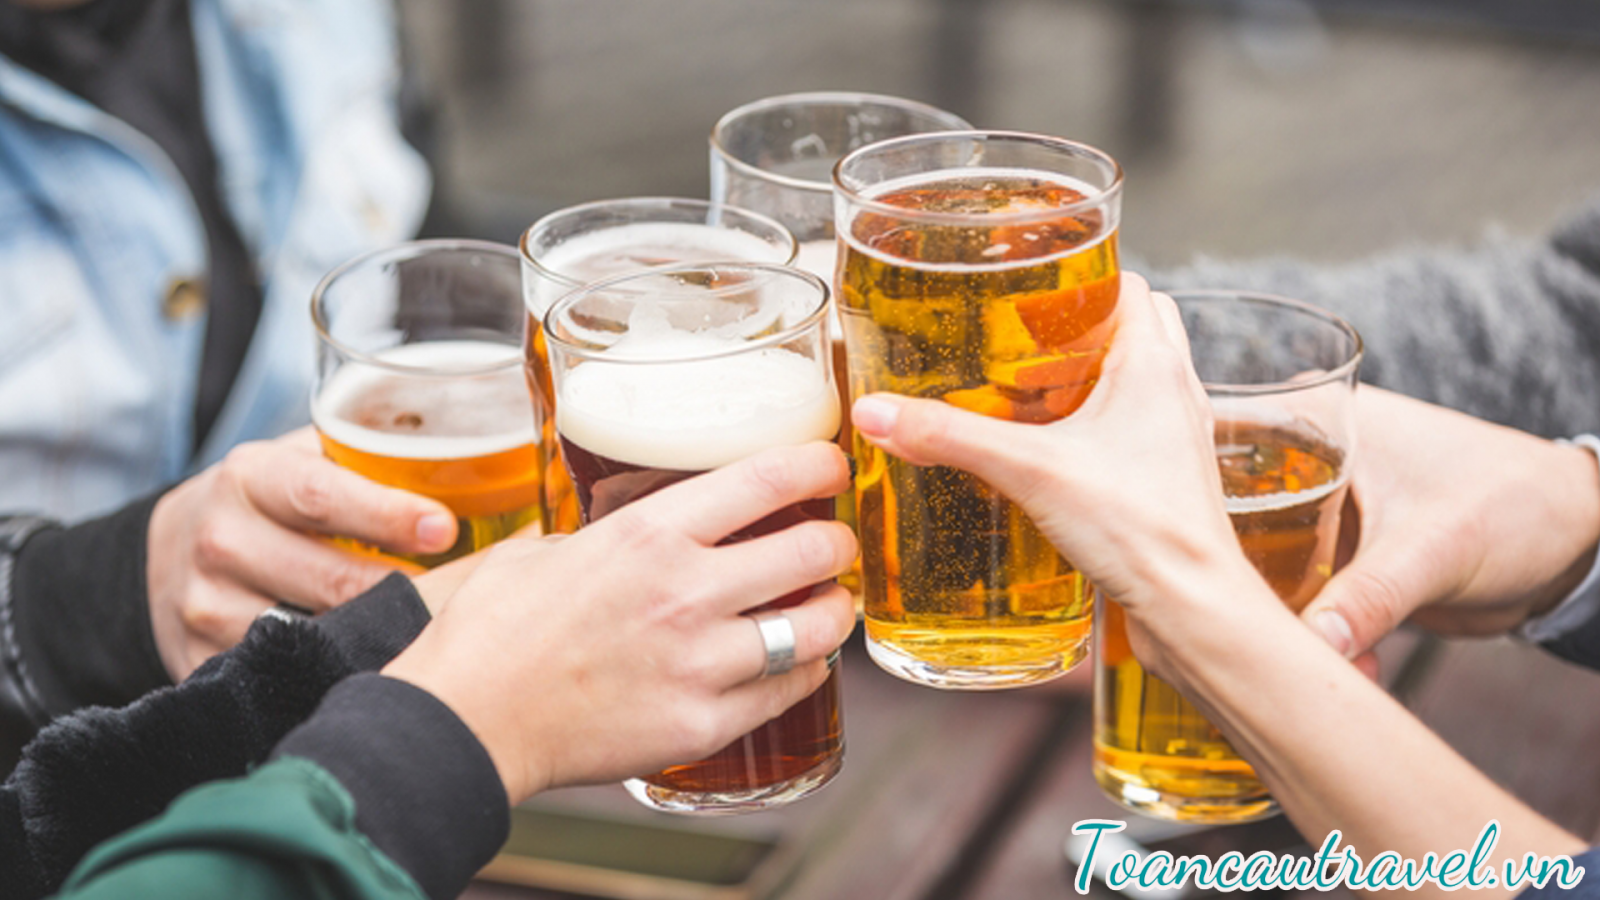 Nếu muốn bia, khách du lịch nên tới quán bar, nhà hàng thay vì nơi công cộng